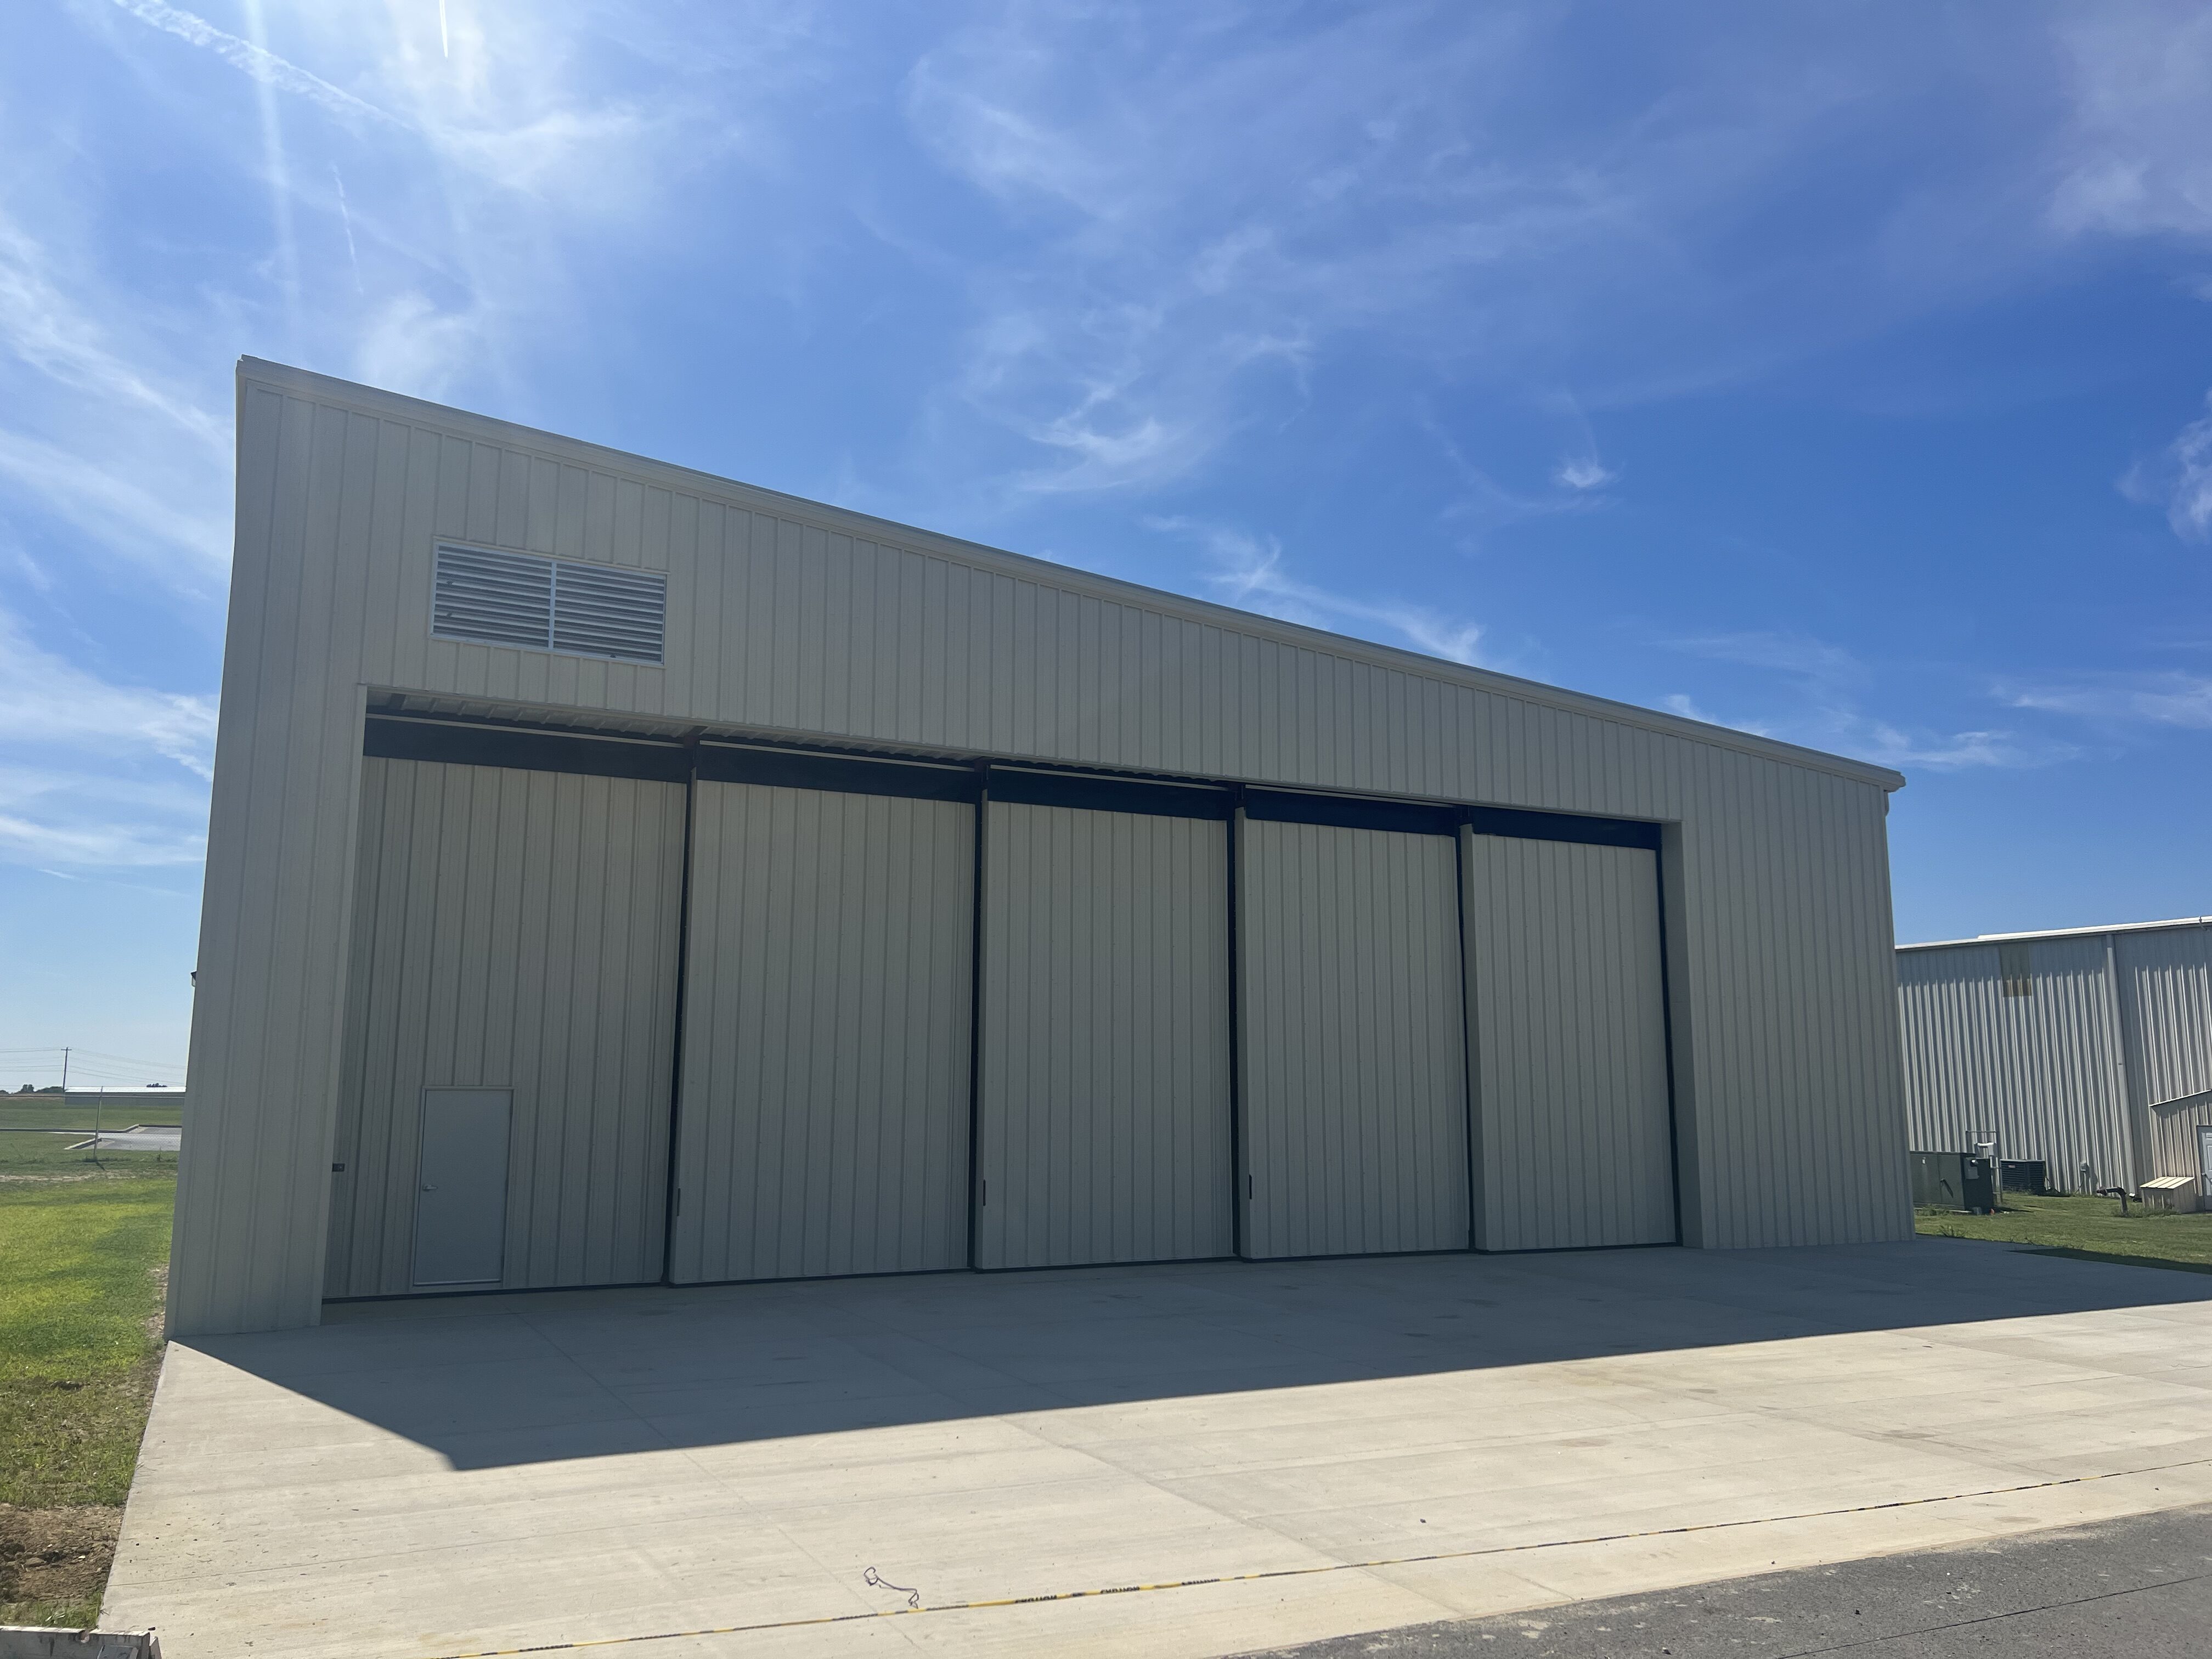 Albertville Airport Storage Hangar Rolling Door System